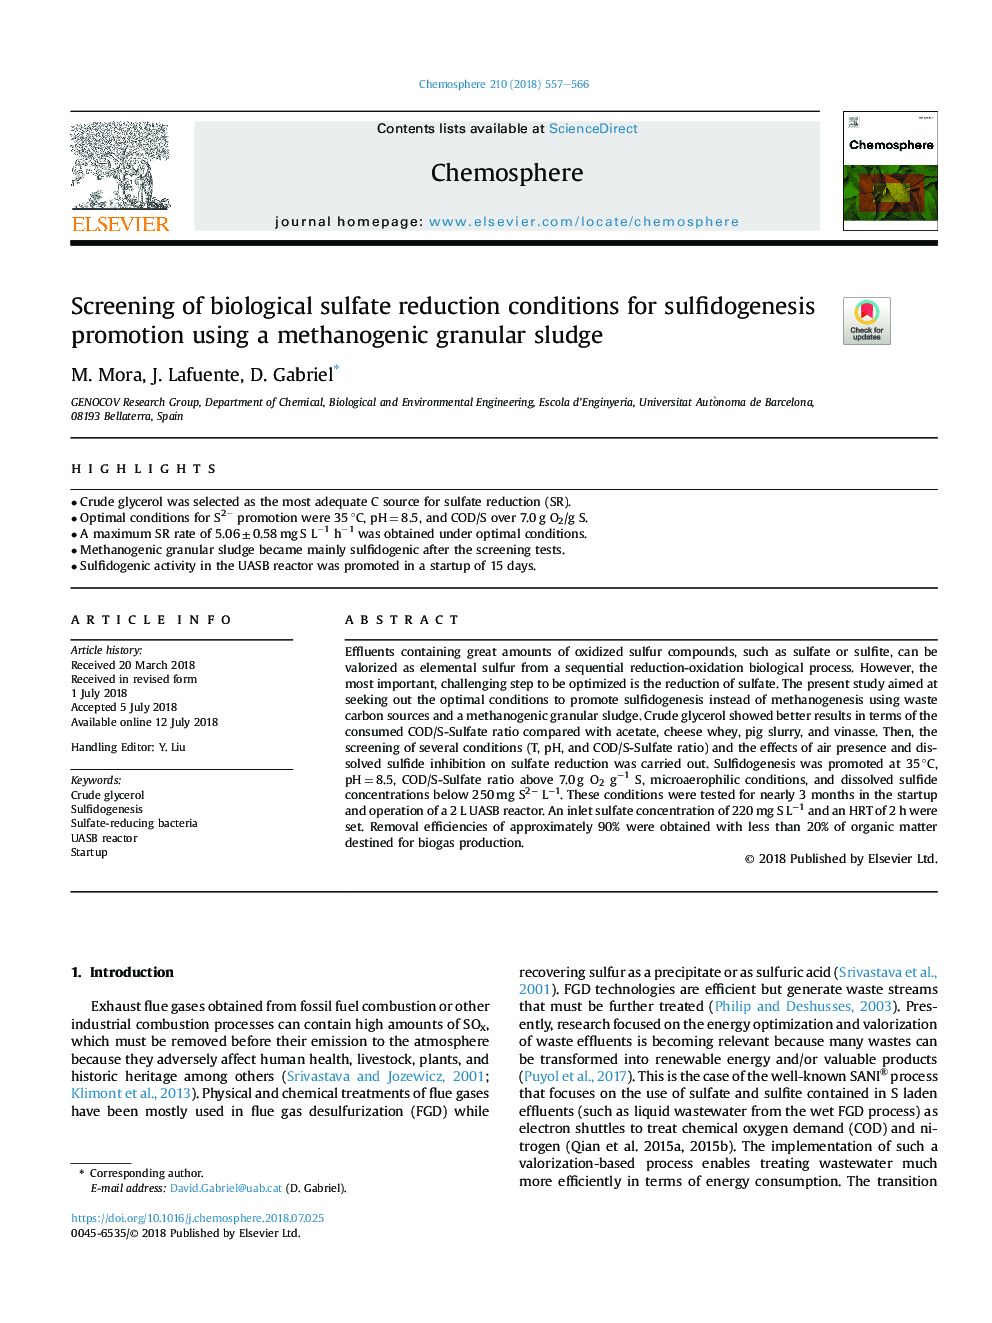 غربالگری شرایط کاهش سولفات بیولوژیکی برای ارتقاء سولفیدوژنز با استفاده از لجن گرانول متانوژنیک 